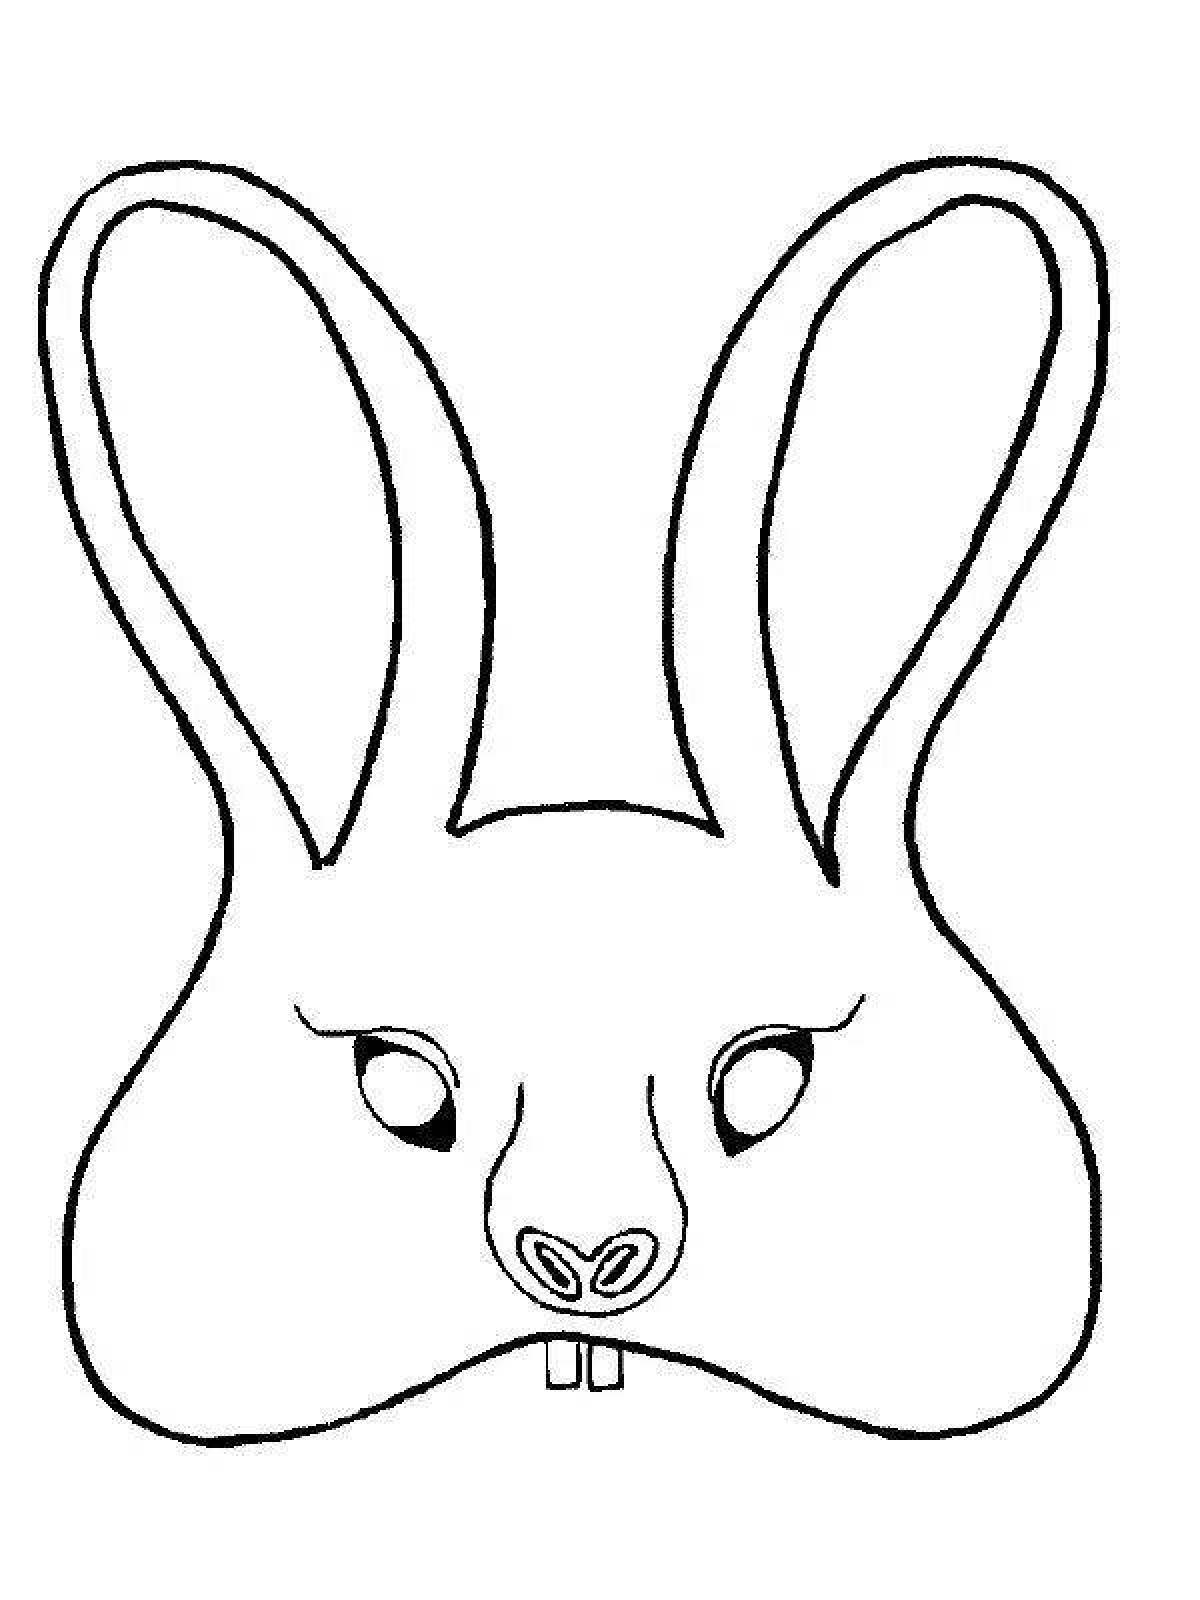 Юмористическая маска зайца раскраска